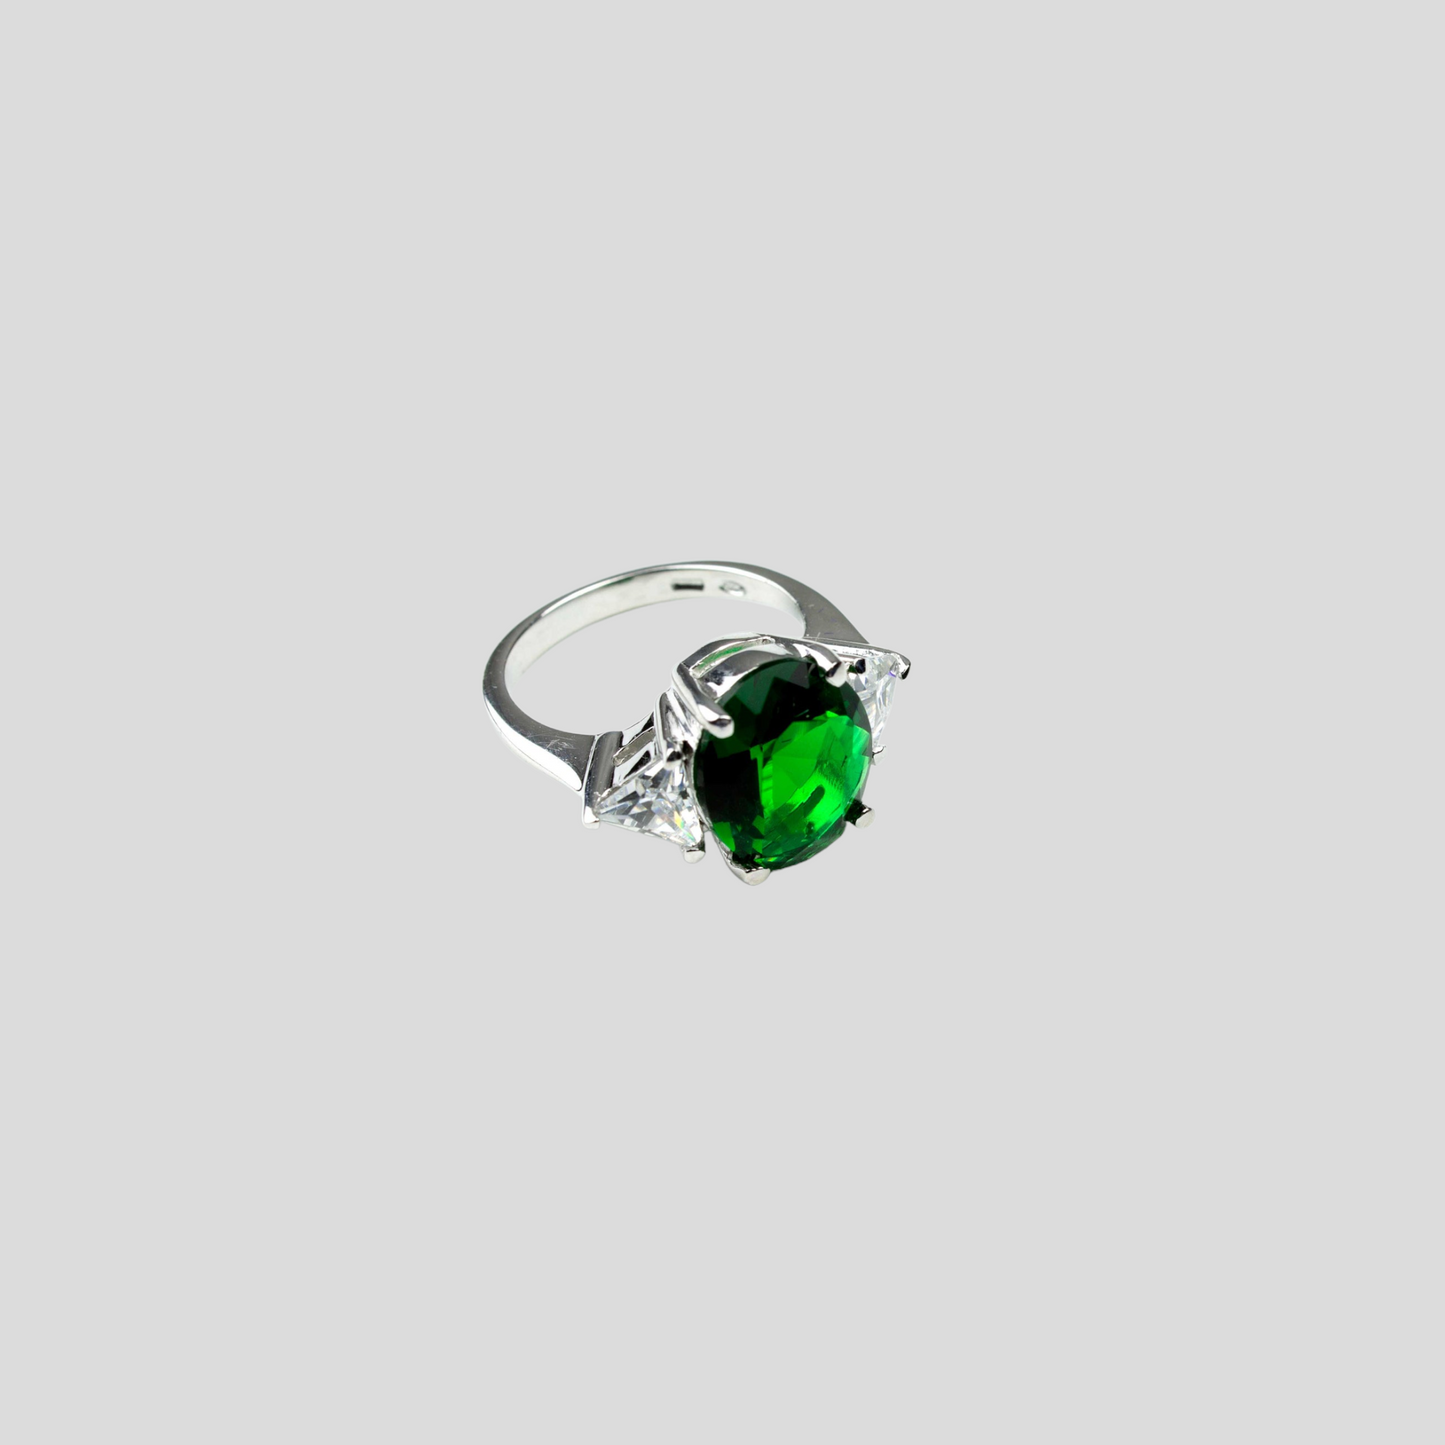 Anello con Pietra Zircone colorata Verde Smeraldo/Rubino/Acquamarina/Zaffiro o Trasparente e Zirconi triangolari punto luce